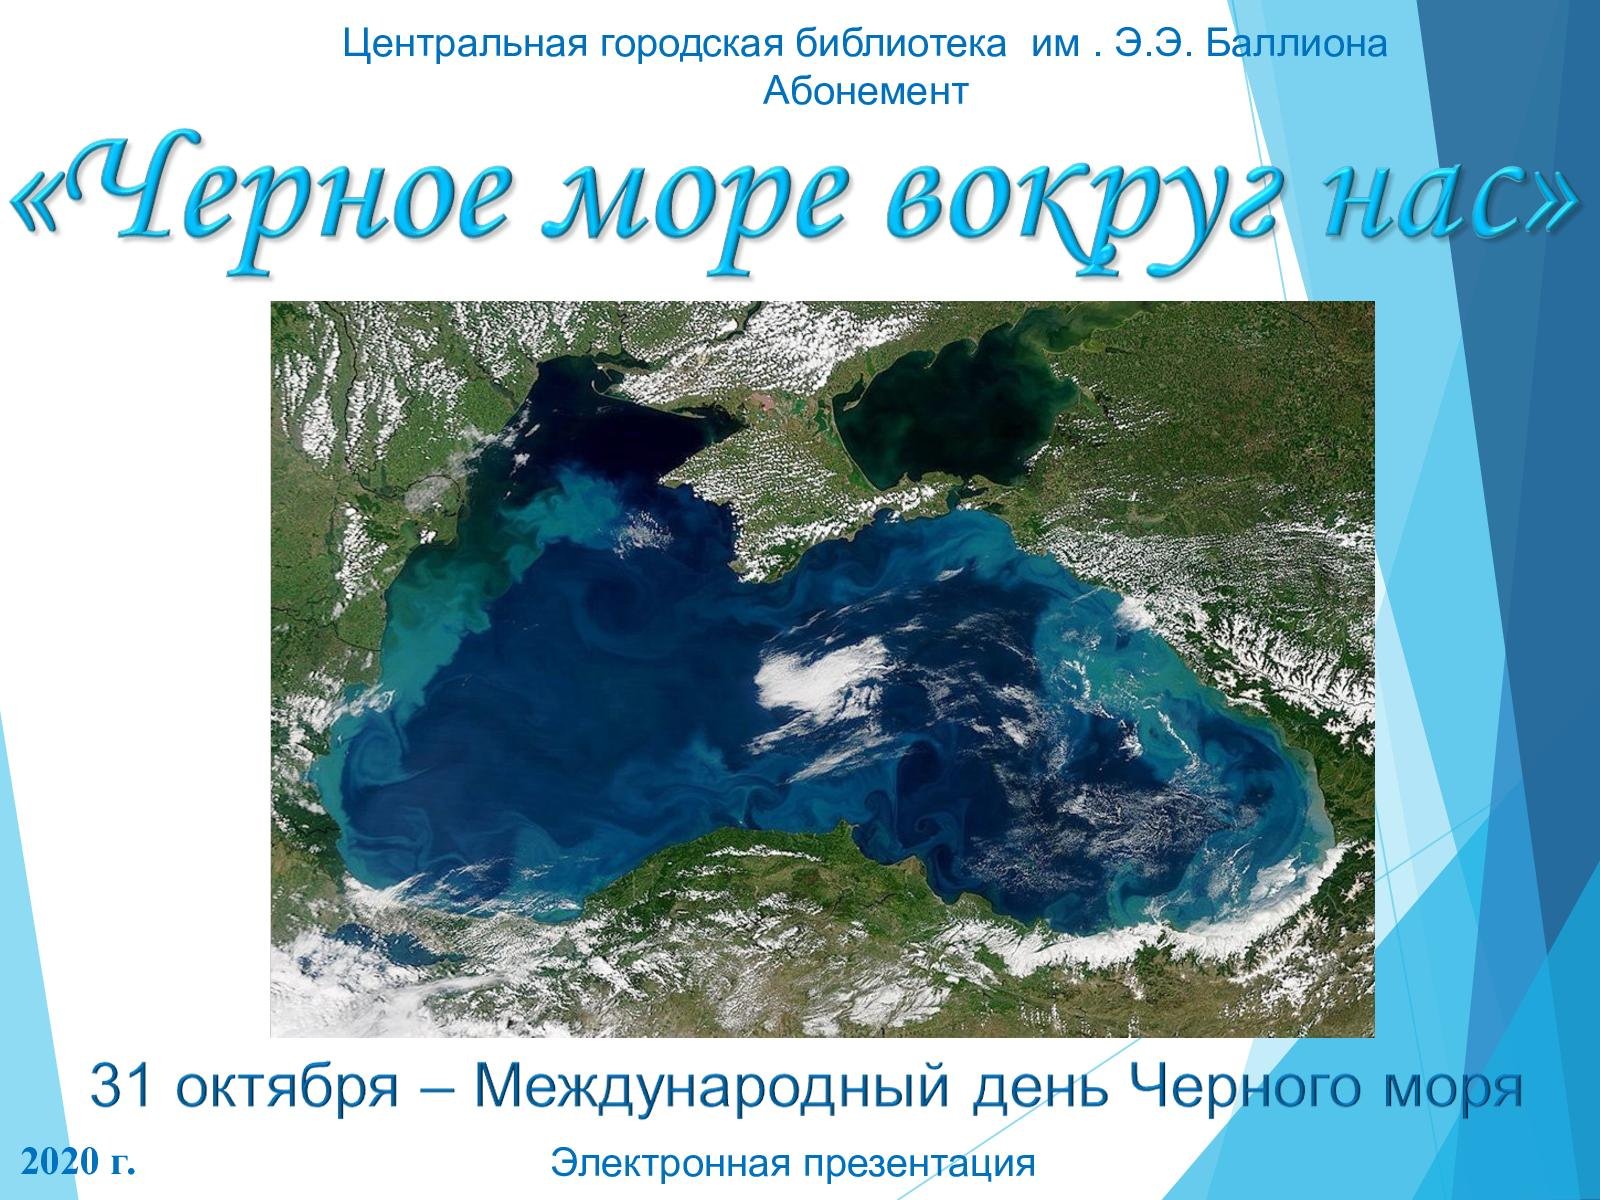 Глубина черного средняя и максимальная. Международный день черного моря. Глубина черного моря. Максимальная глубина черного моря. Рельеф дна черного моря.